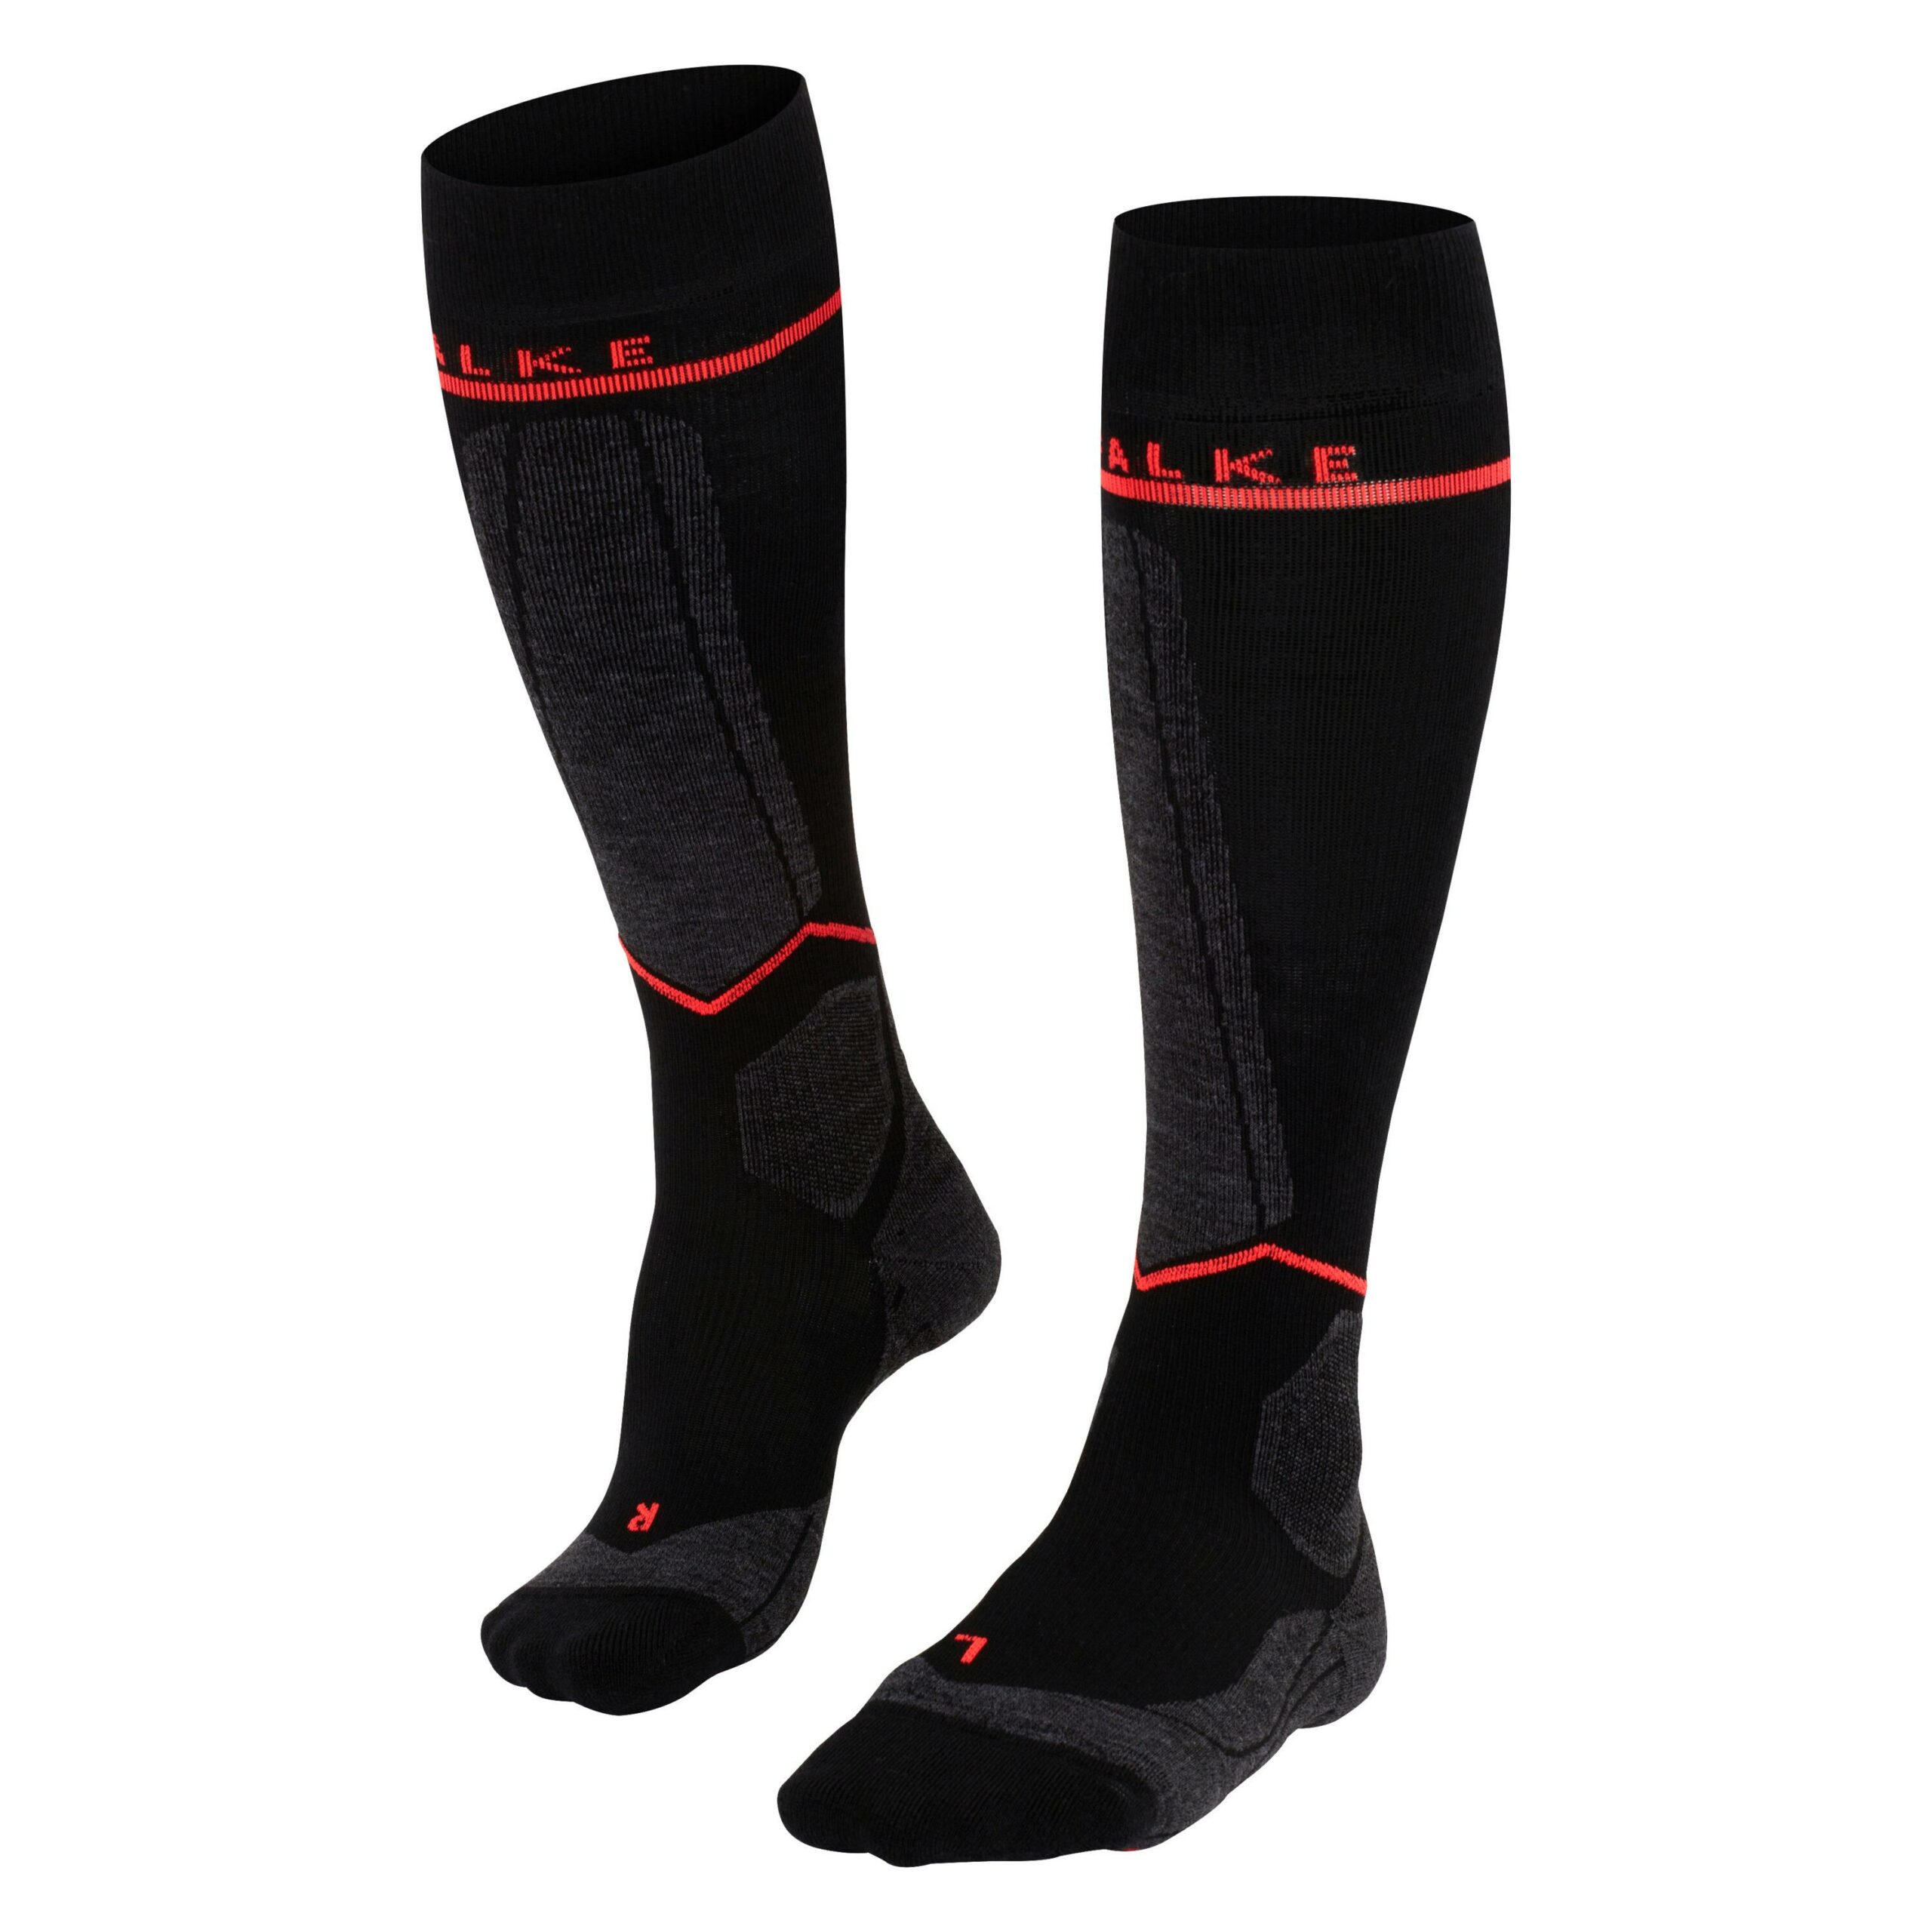 Falke SK Energizing Socken Damen Hersteller: Falke Bestellnummer:4043876878010